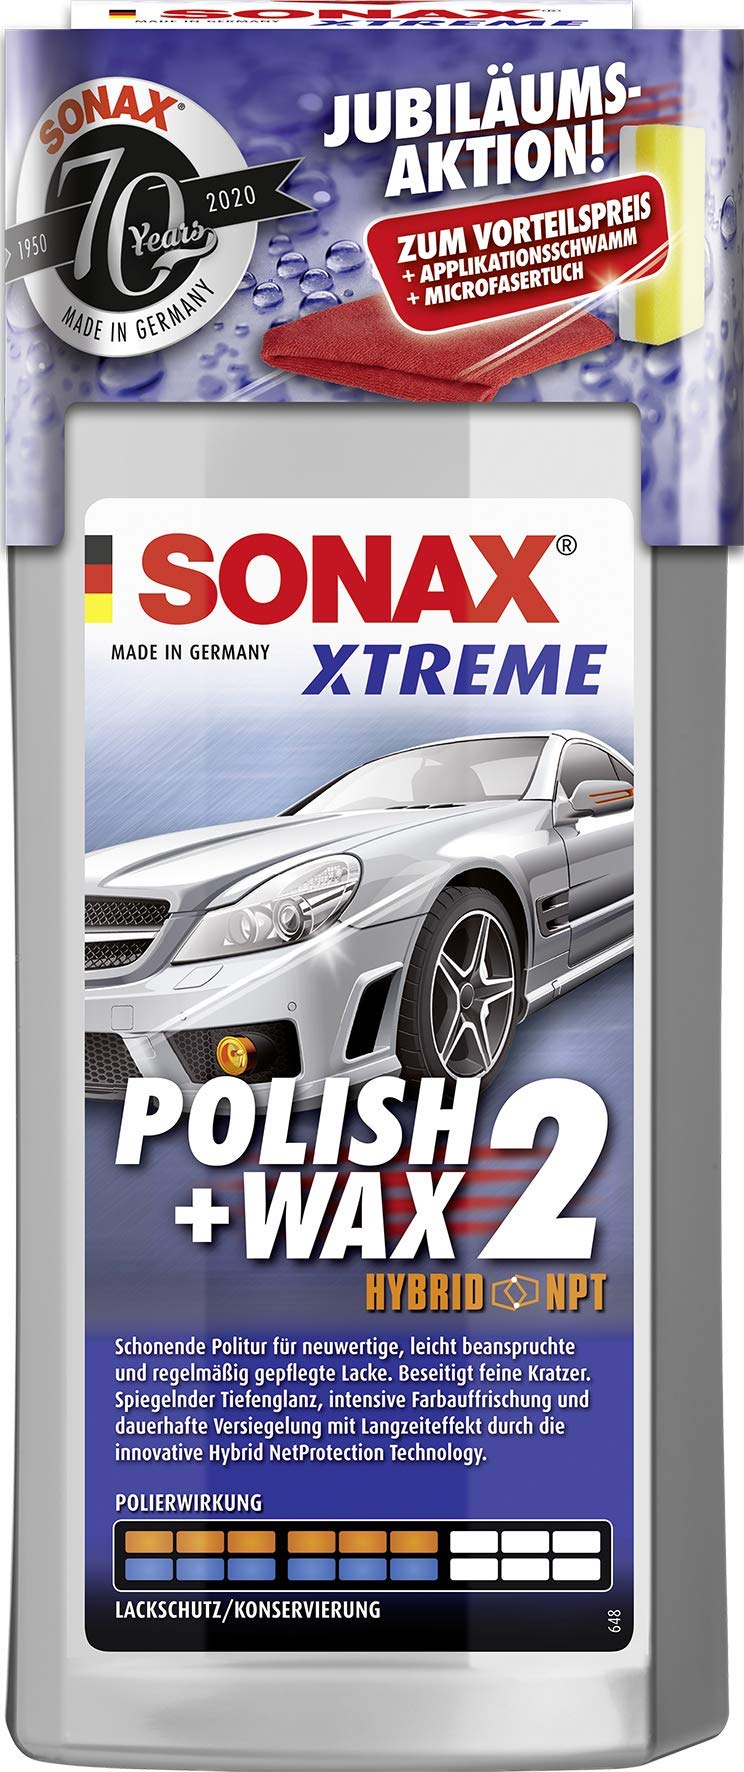 SONAX XTREME Polish+Wax 2 AktionsSet 70 Jahre (500 ml) inkl. gratis Applikationsschwamm und Mikrofasertuch | Art-Nr. 02078410 von SONAX